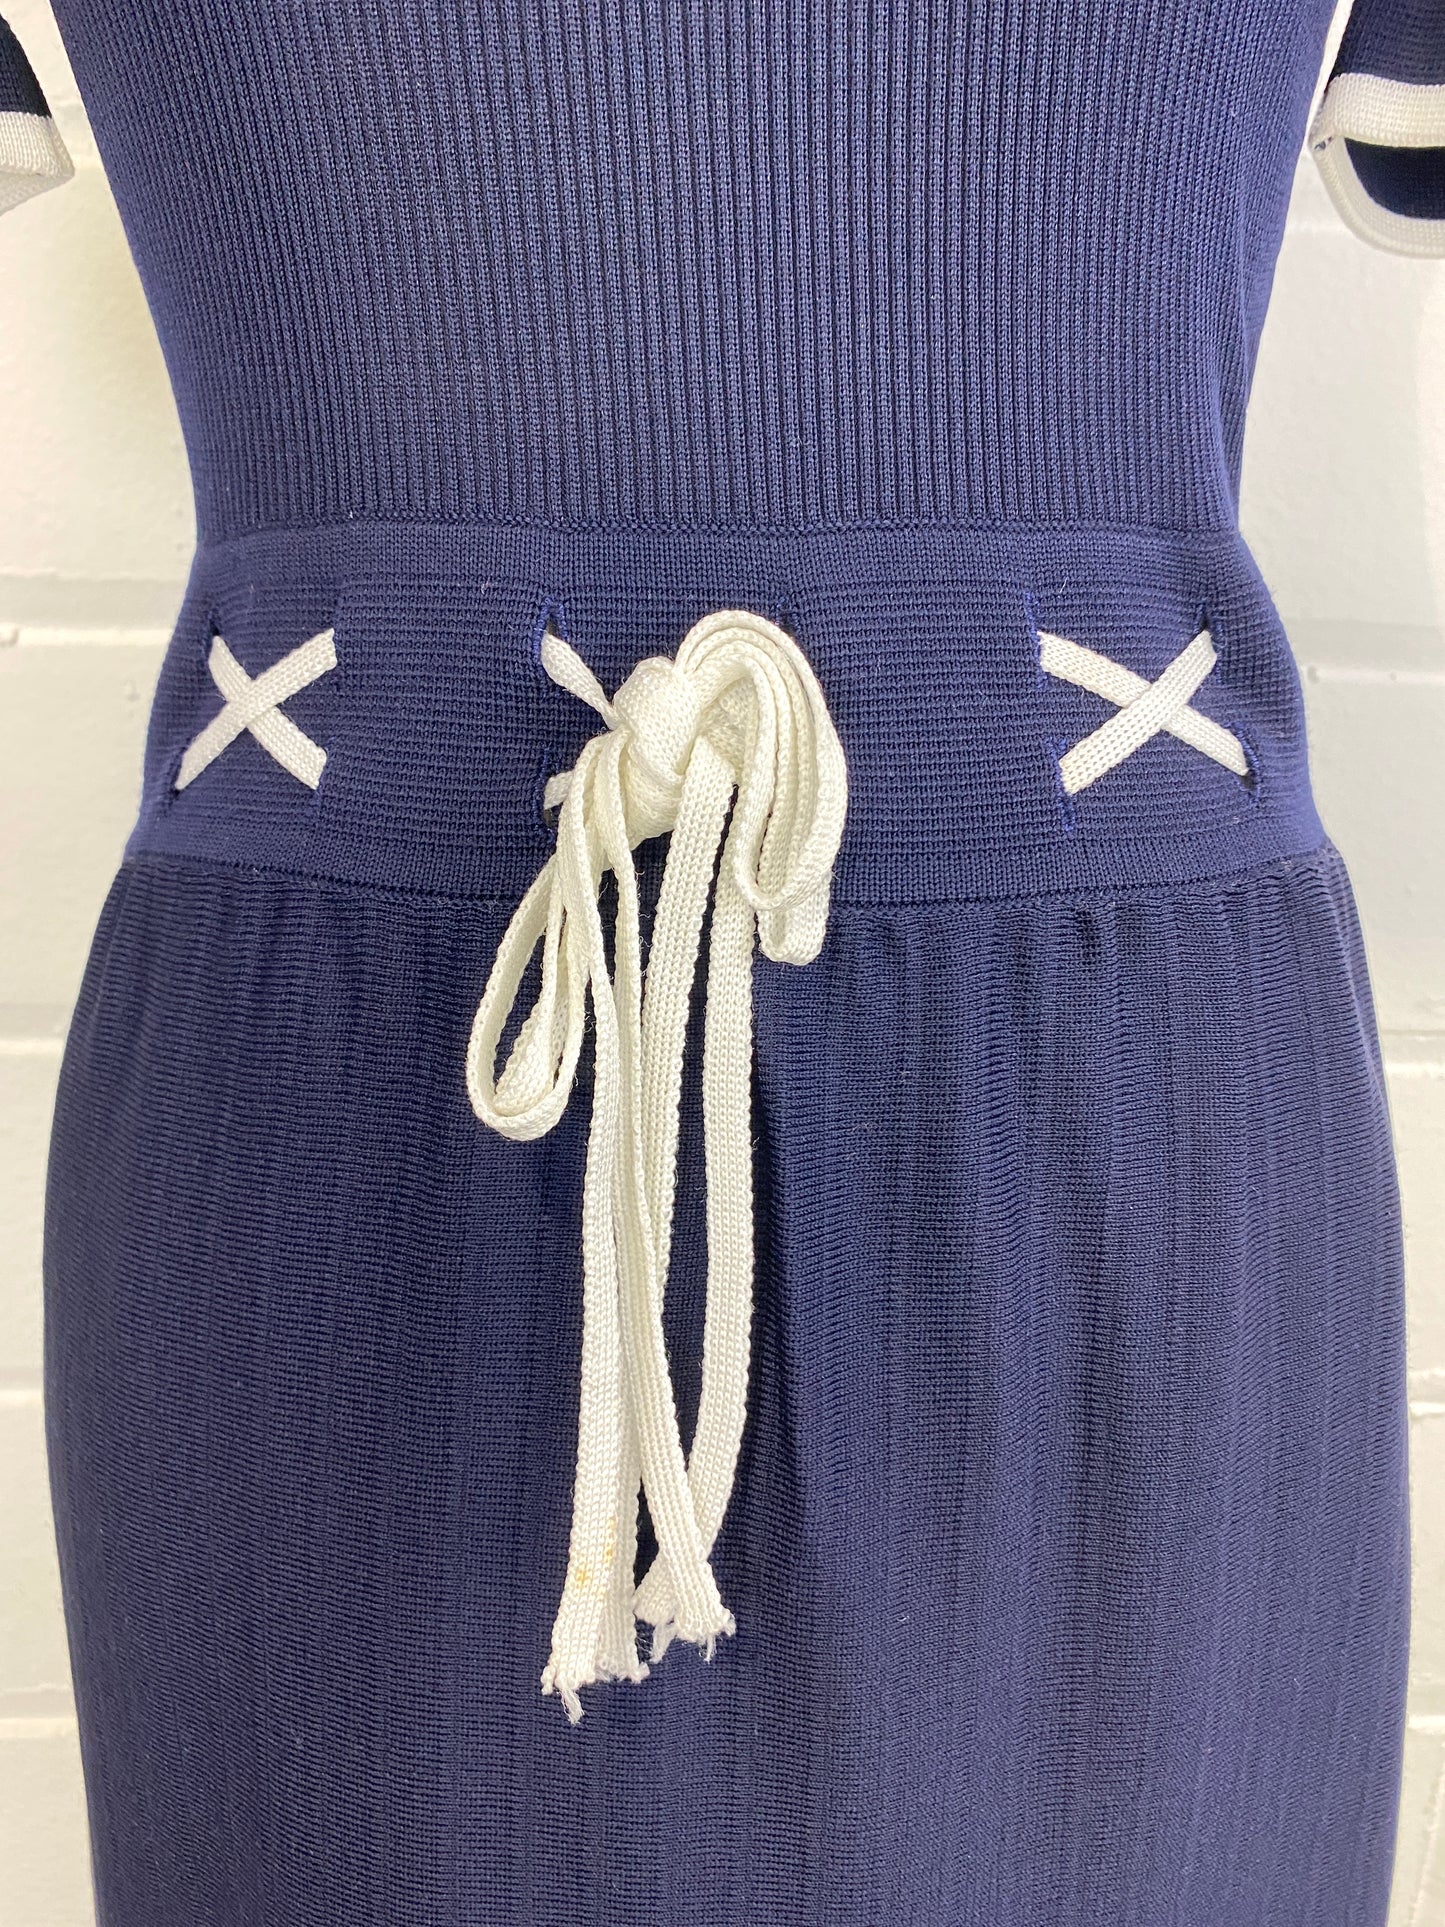 Vintage Deadstock 70s Navy Crissa Short-Sleeve Knit Dress